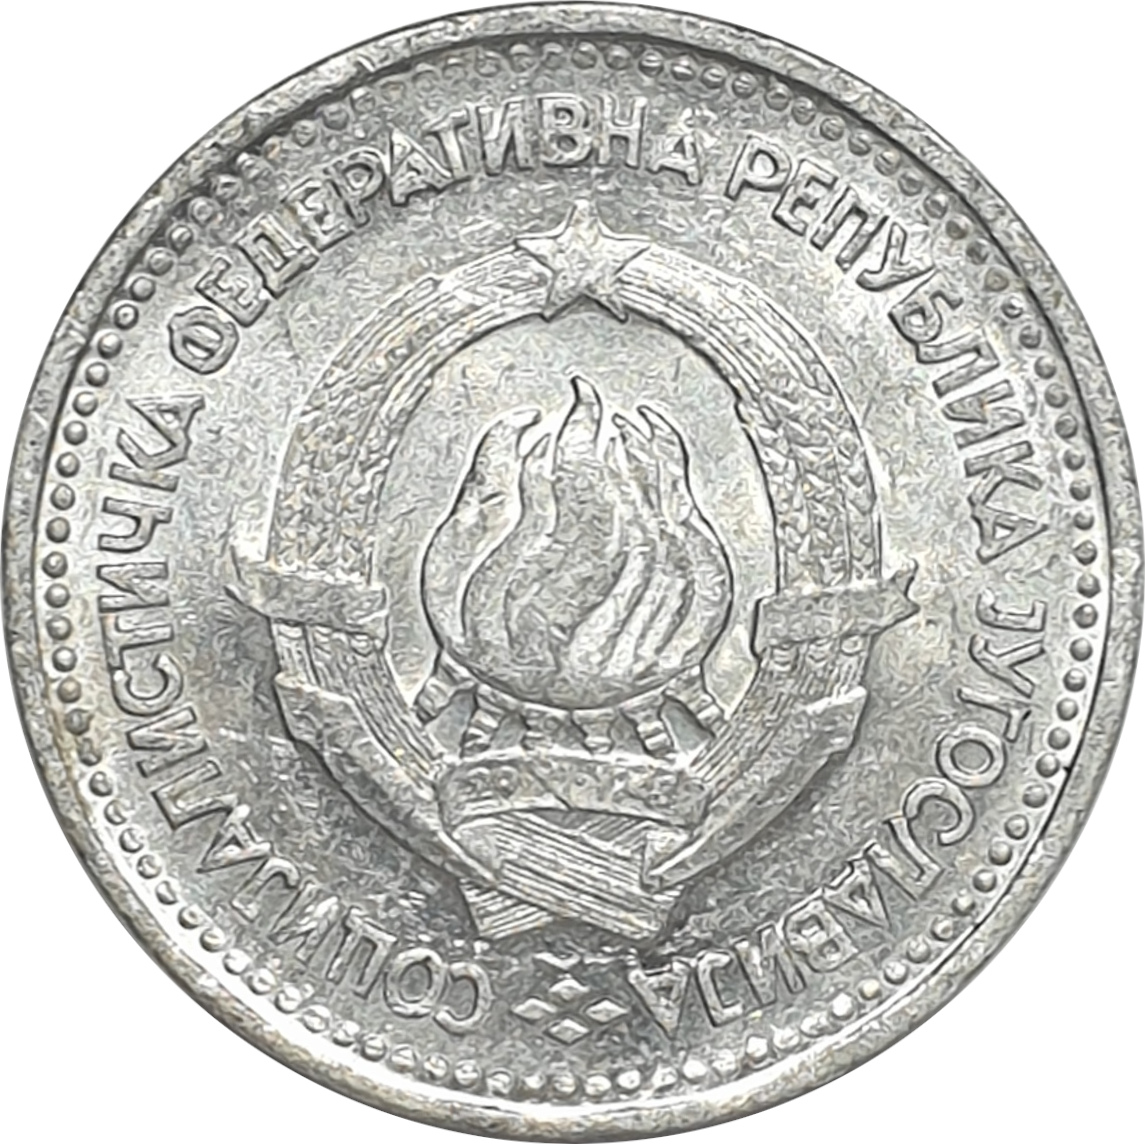 5 dinara - Emblème - Aluminium - République socialiste